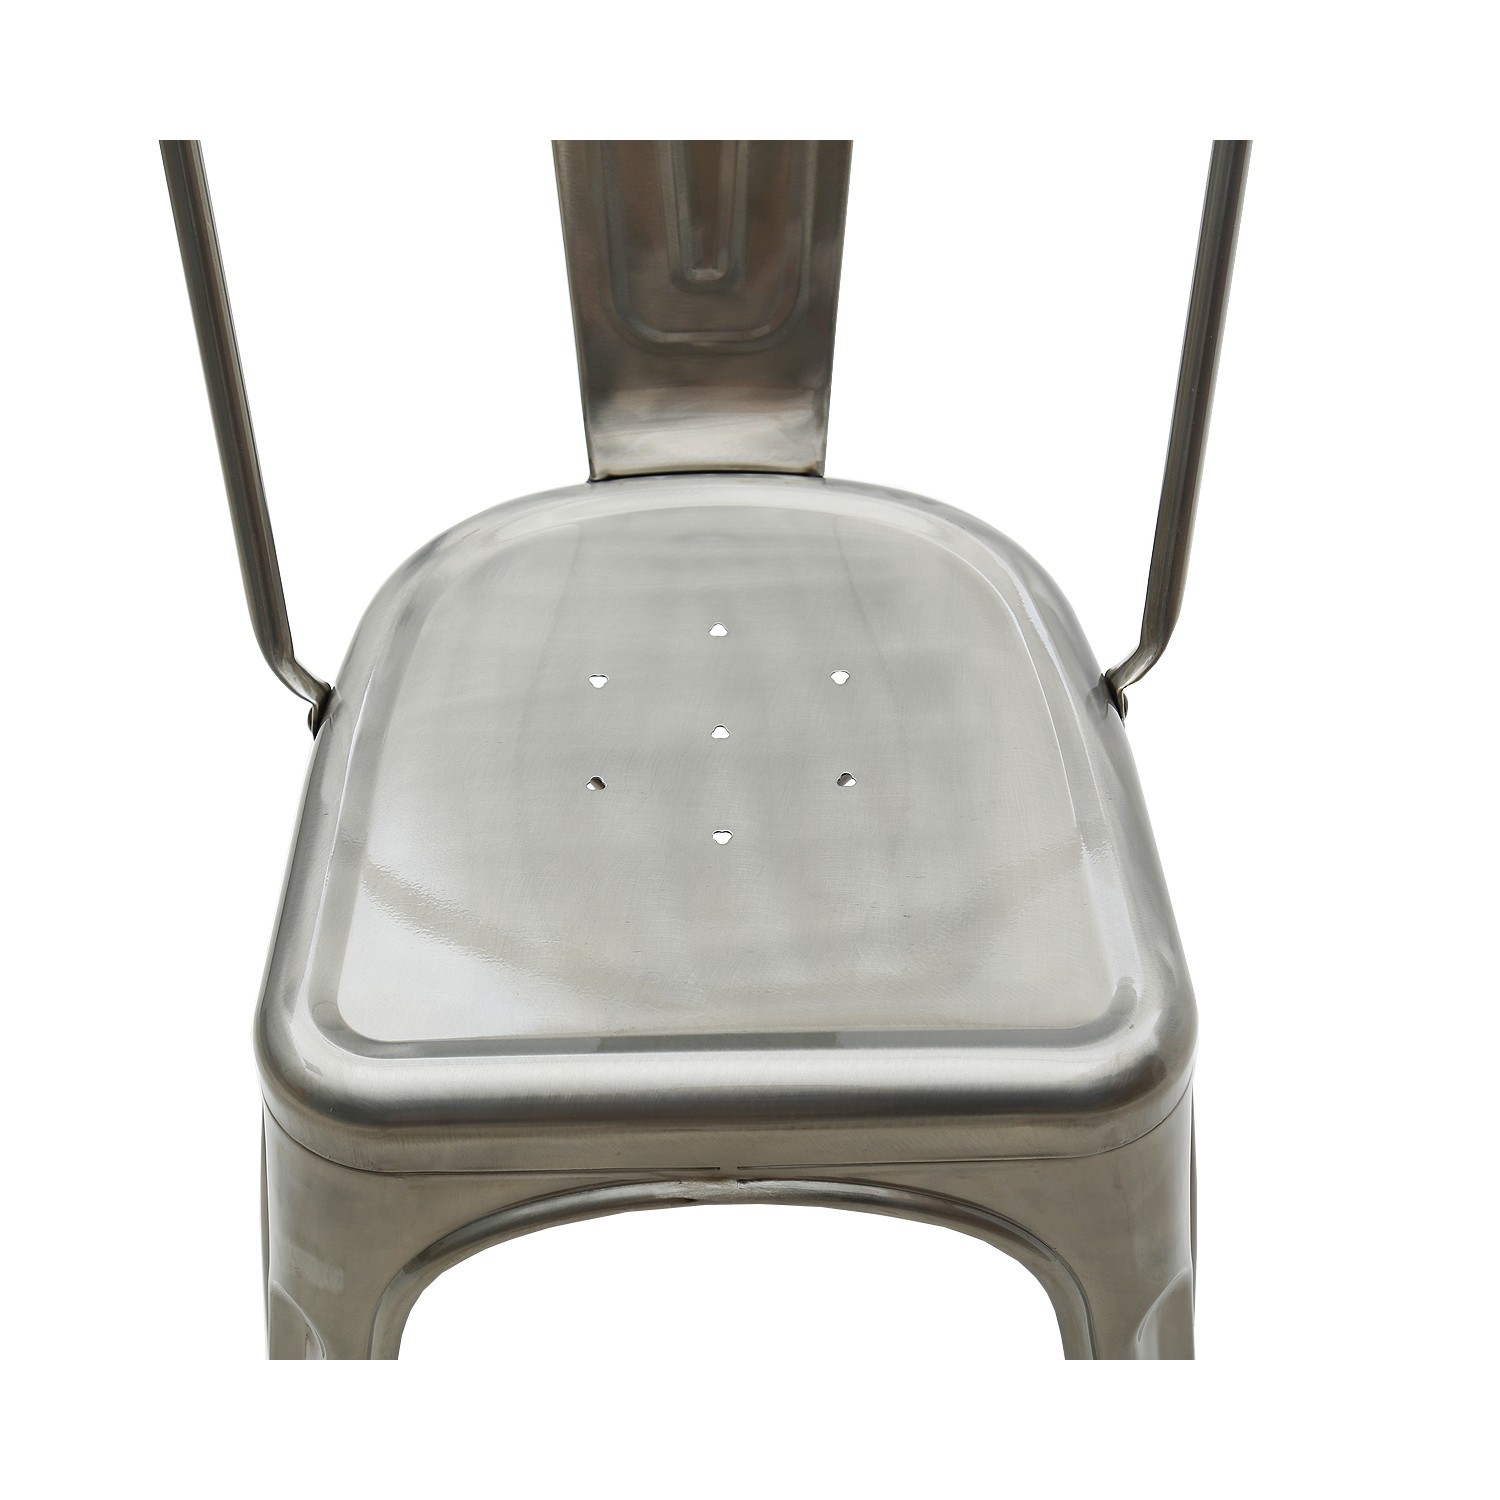 MOBILI 2G - Set 6 sedie moderne metallo colore specchiato 45x50x85